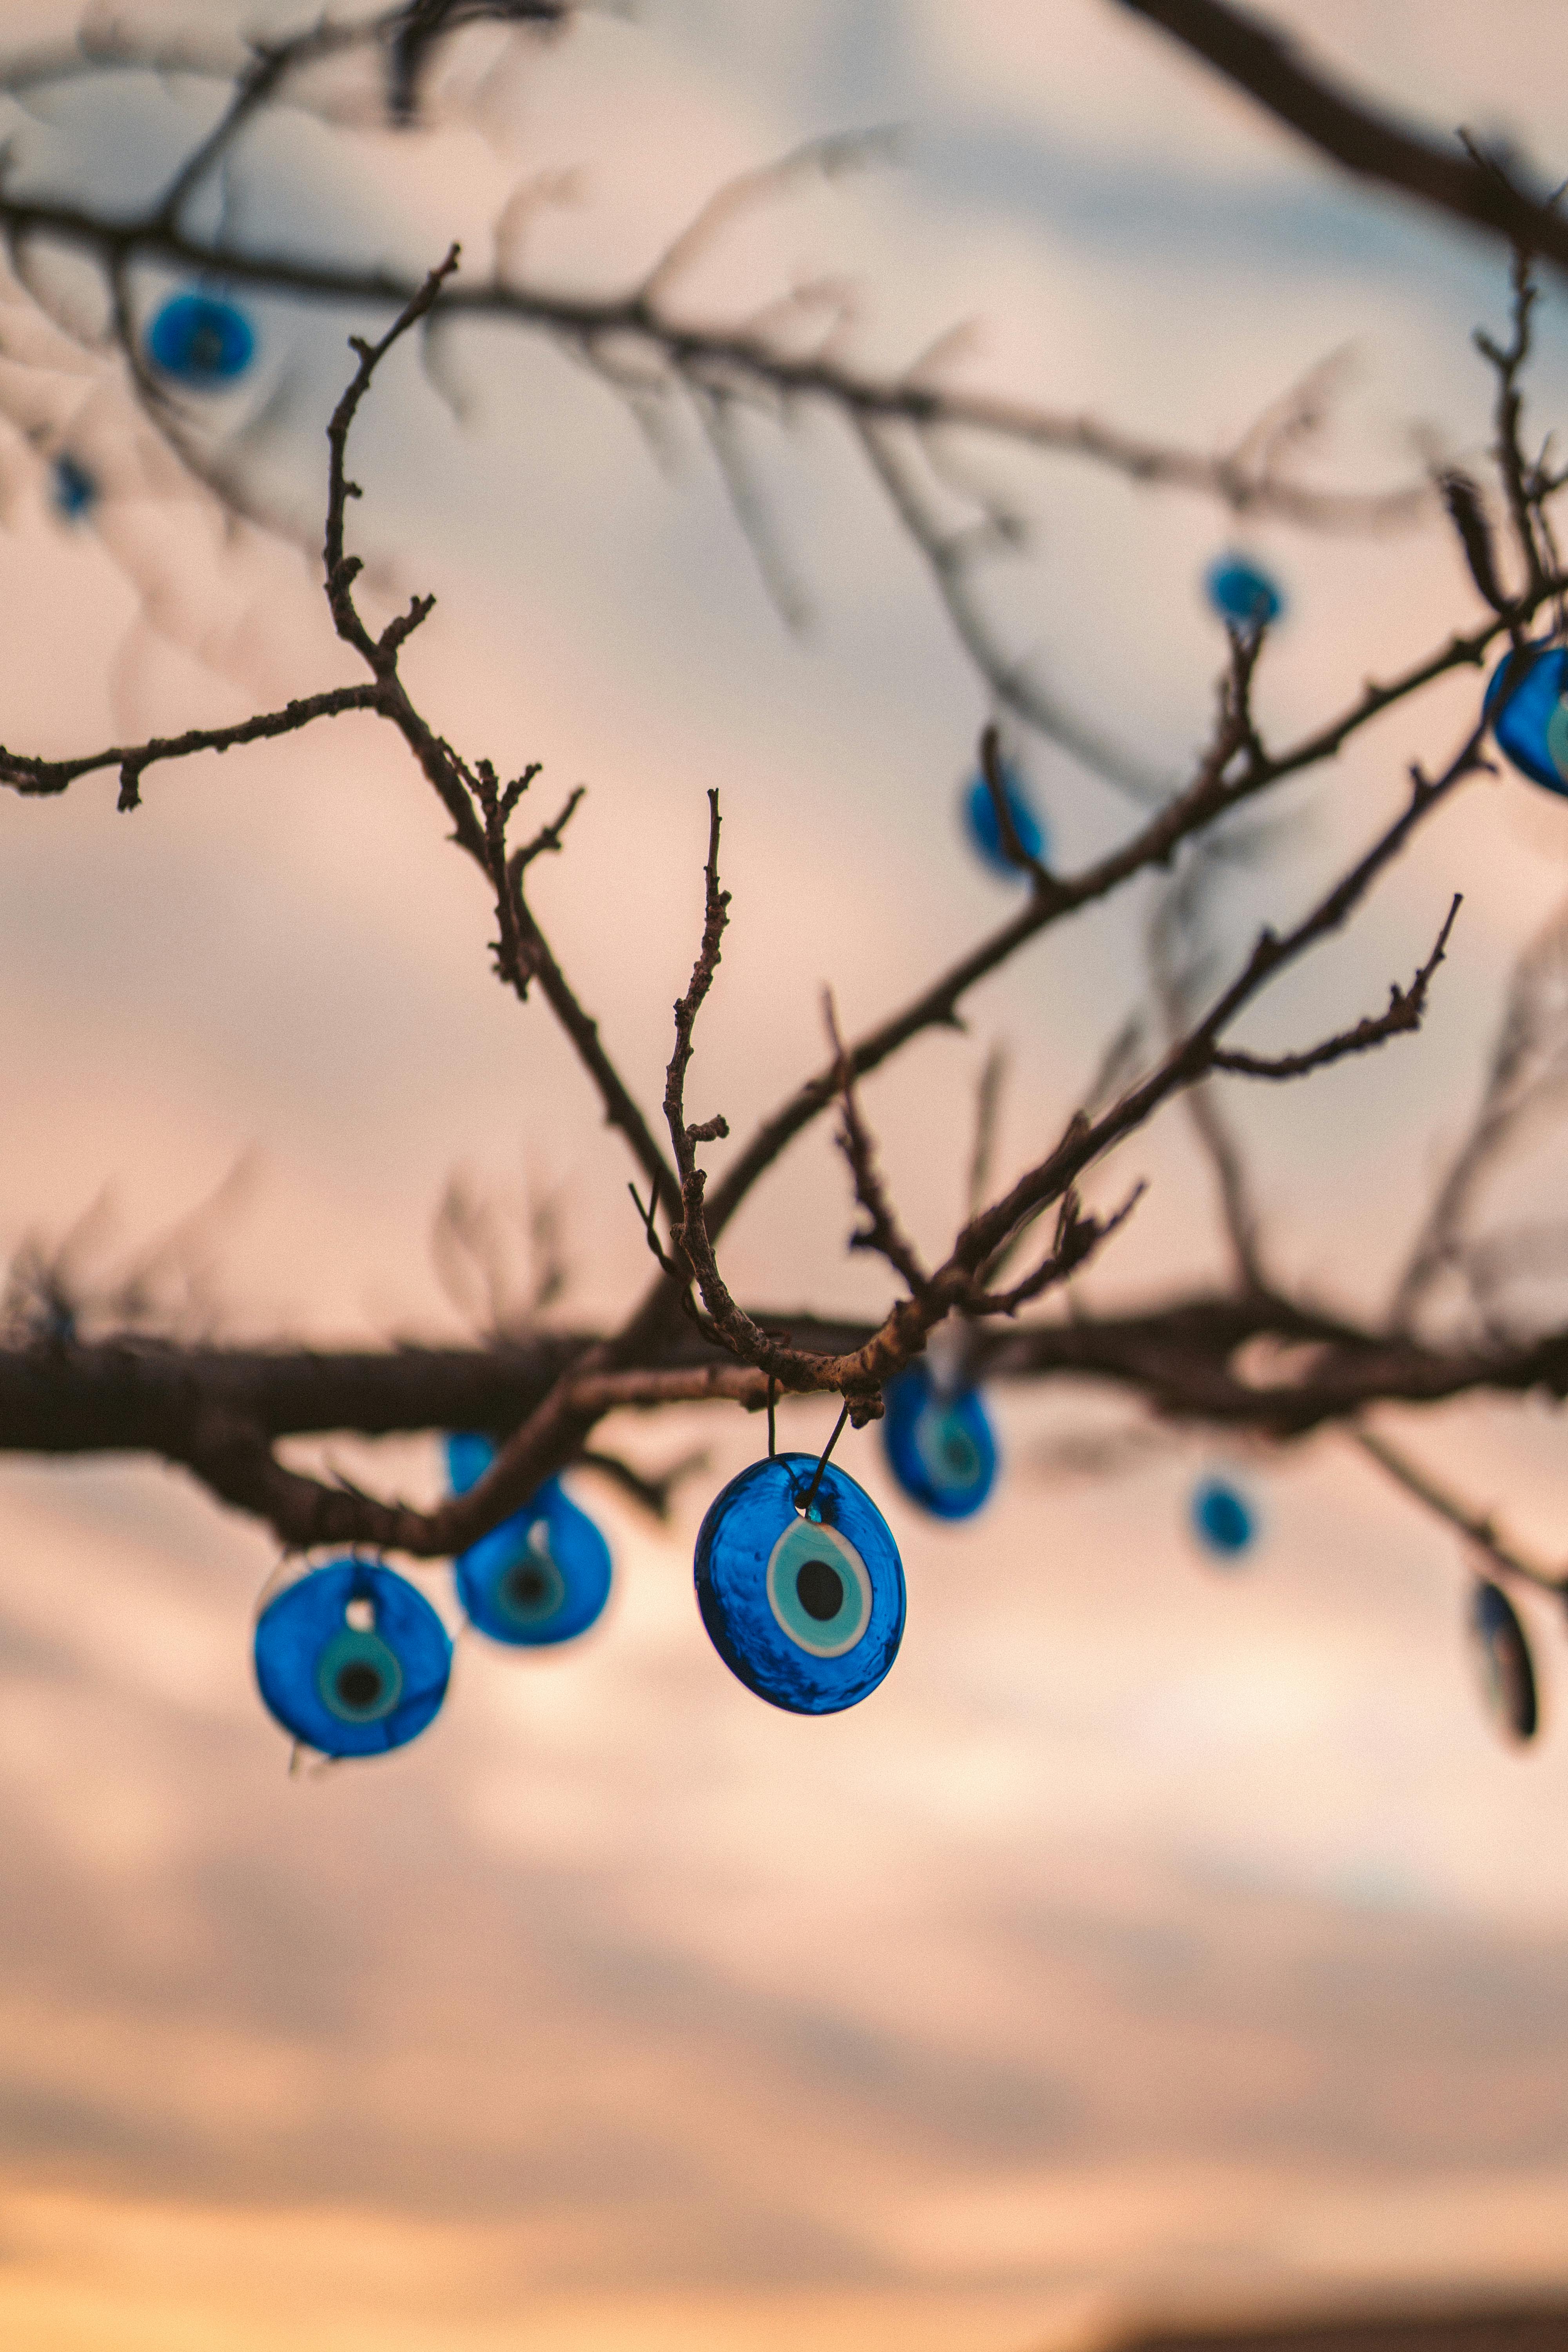 Chùm mắt ác độc được treo lên nhánh cây có thể khiến ai đó cảm thấy ám ảnh, nhưng với sự kỳ lạ và đáng sợ của chúng, bạn có chắc chắn muốn bỏ qua cơ hội để khám phá hình ảnh này không? 